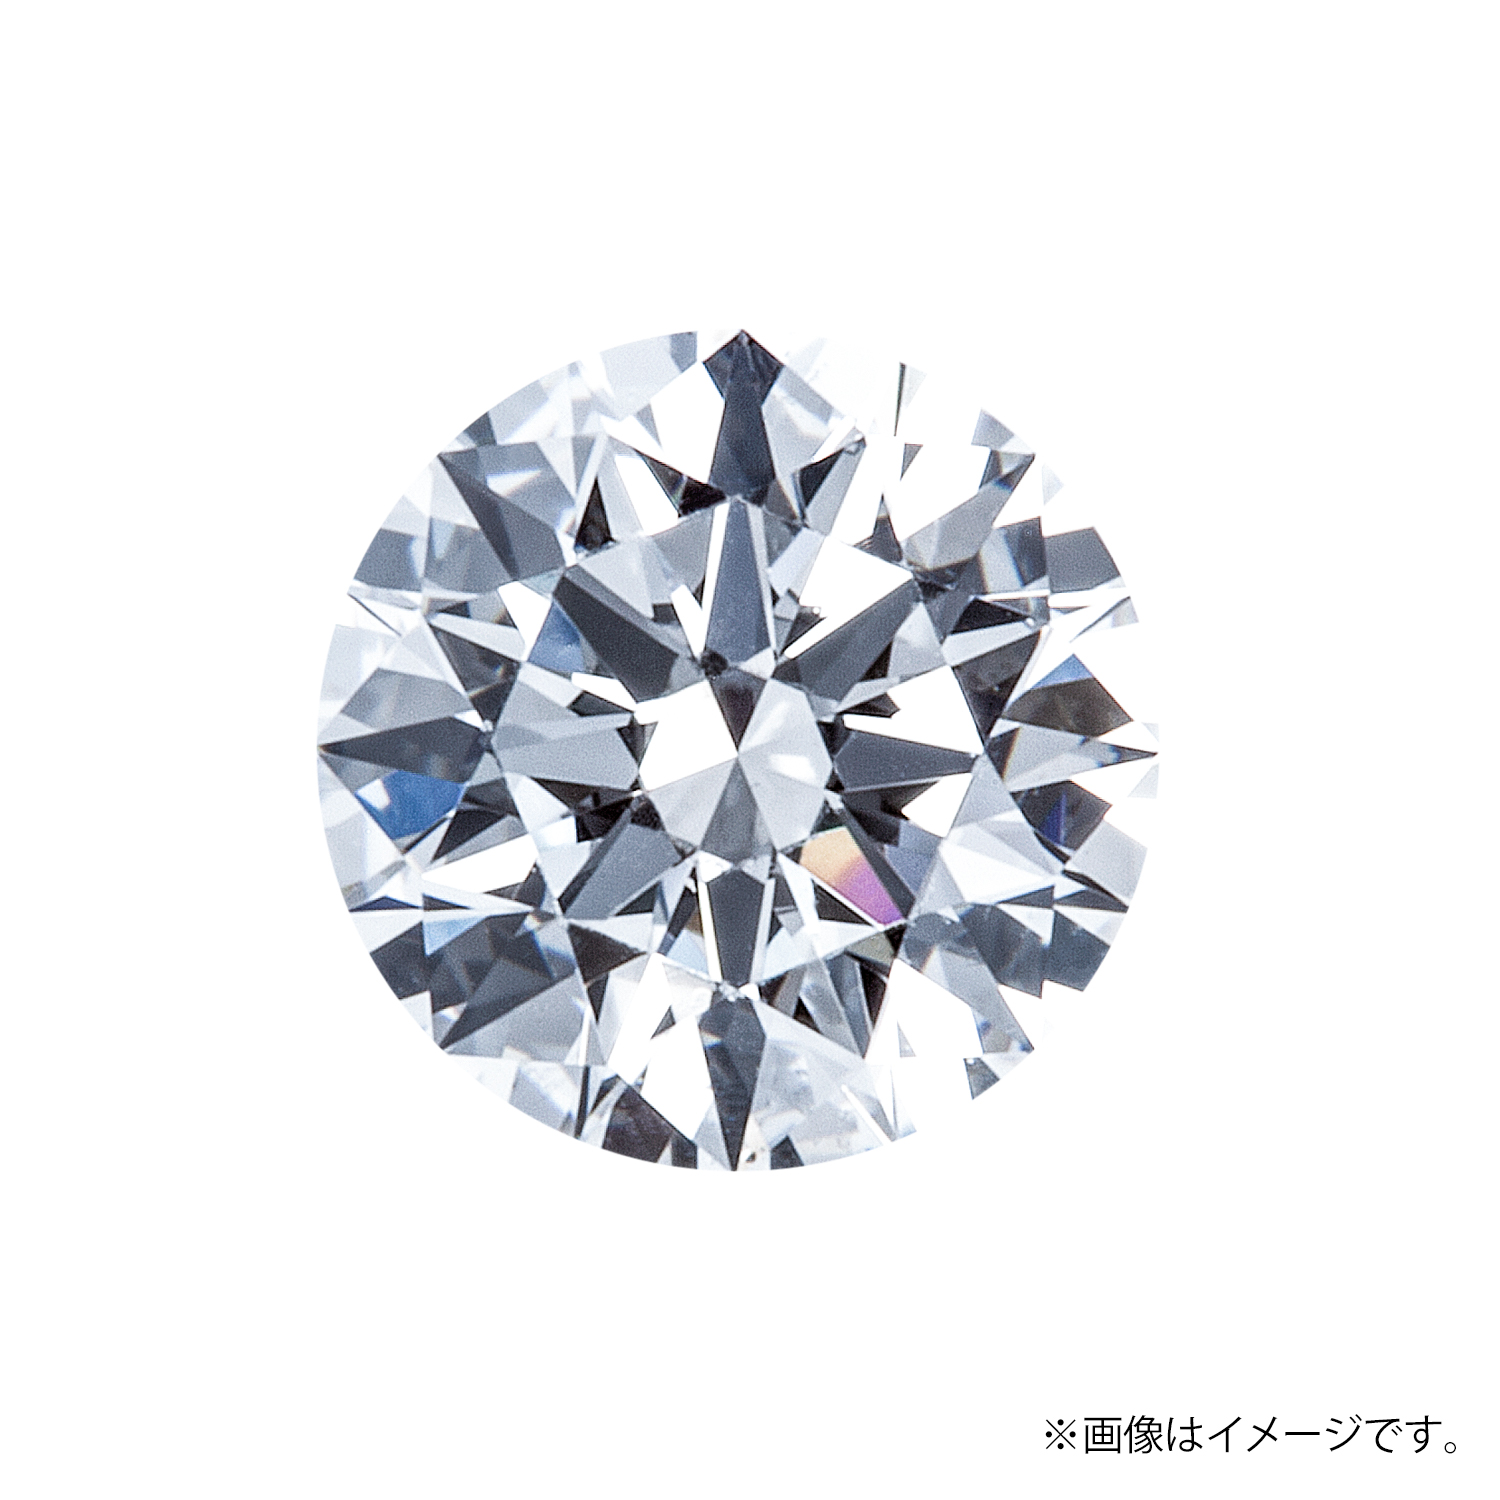 0.333ct Round ダイヤモンド / F / SI2 / VERY GOOD